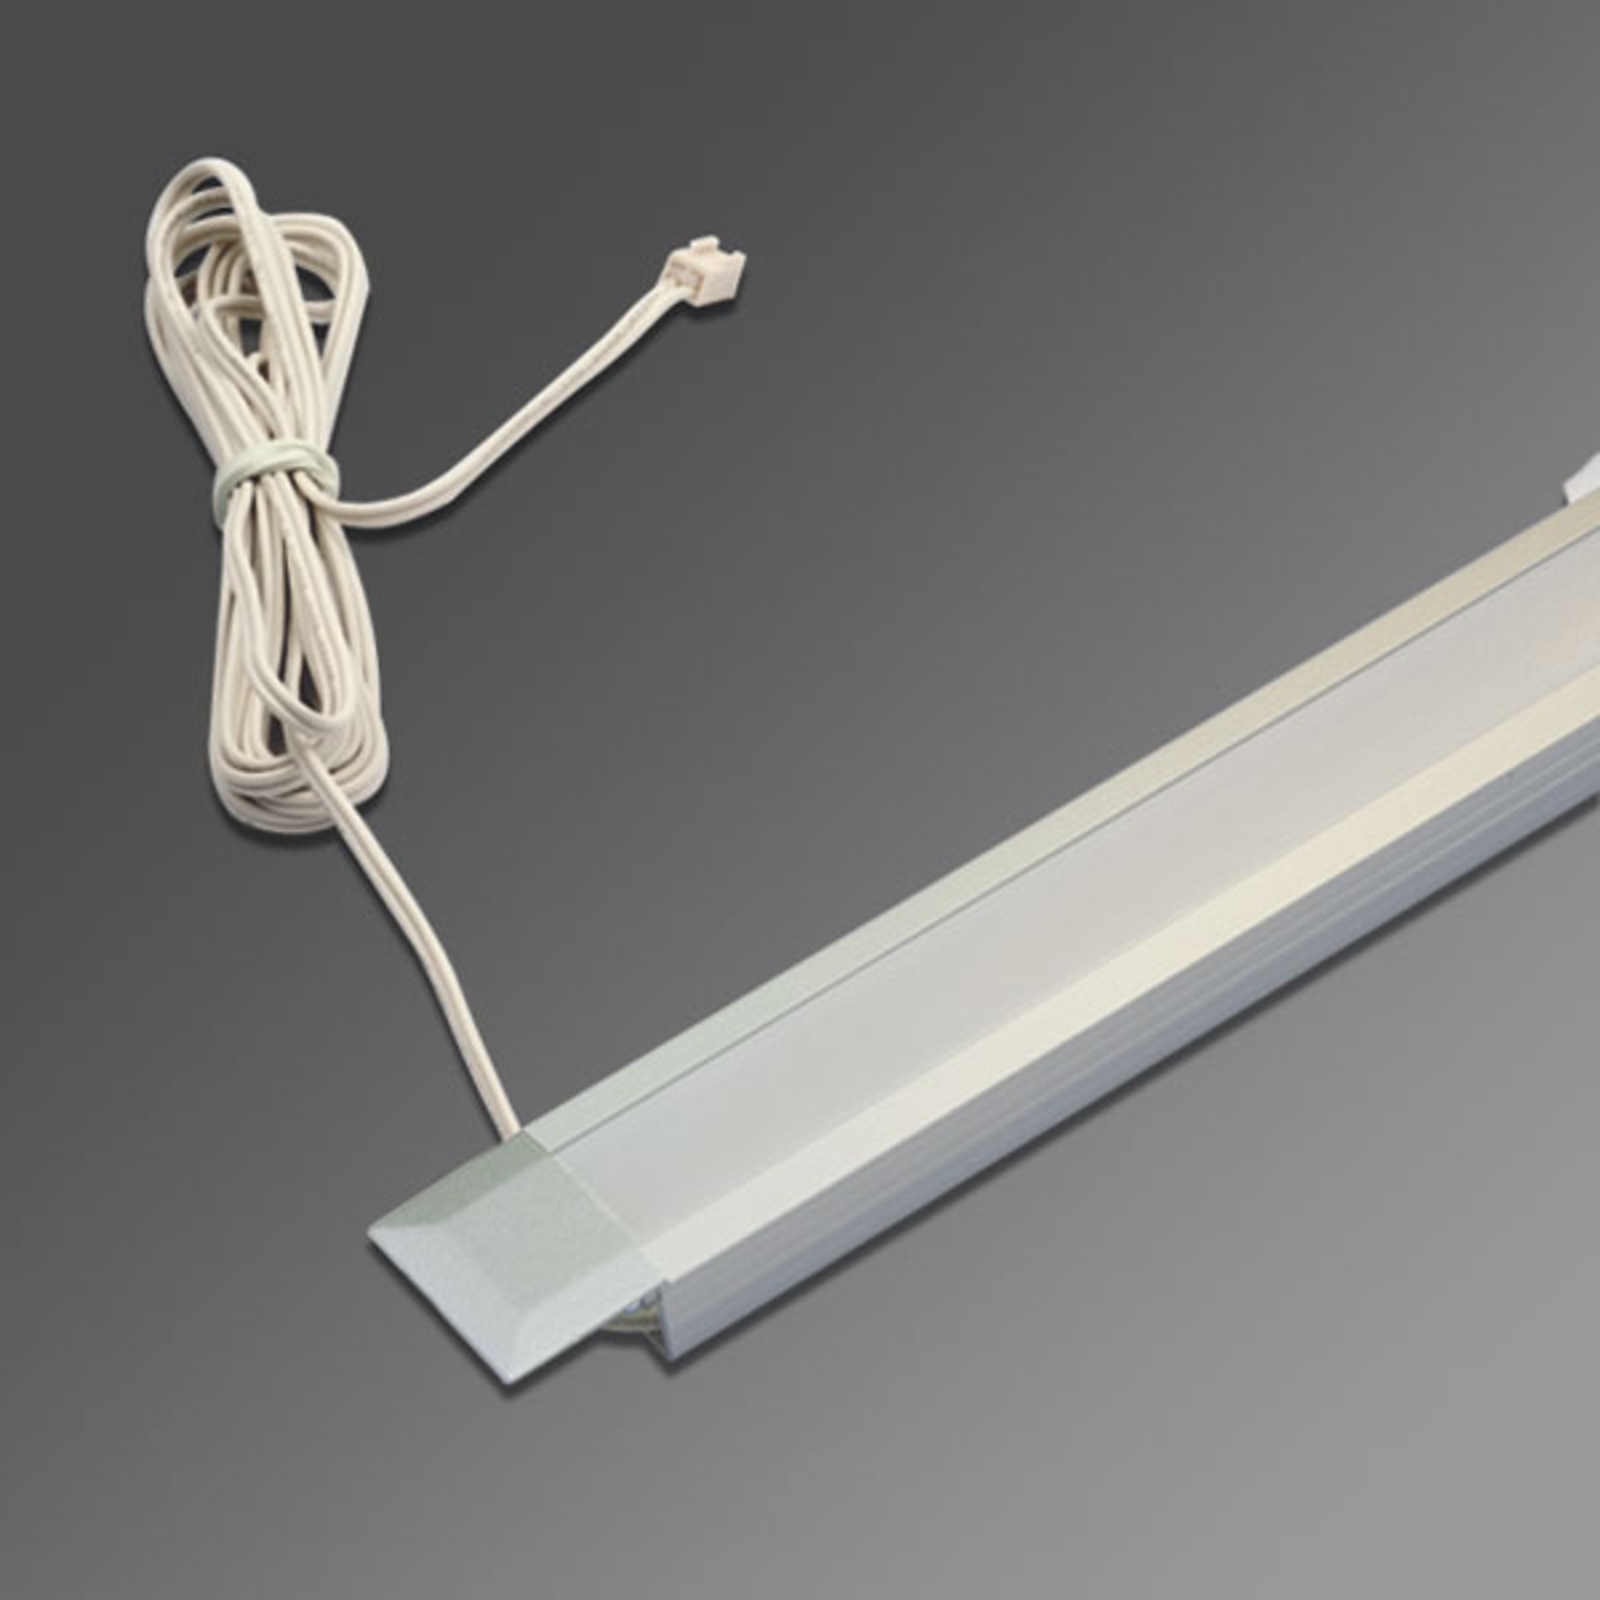 Begin Uitmaken kant 83 cm lang - LED inbouwlamp IN-Stick SF | Lampen24.be